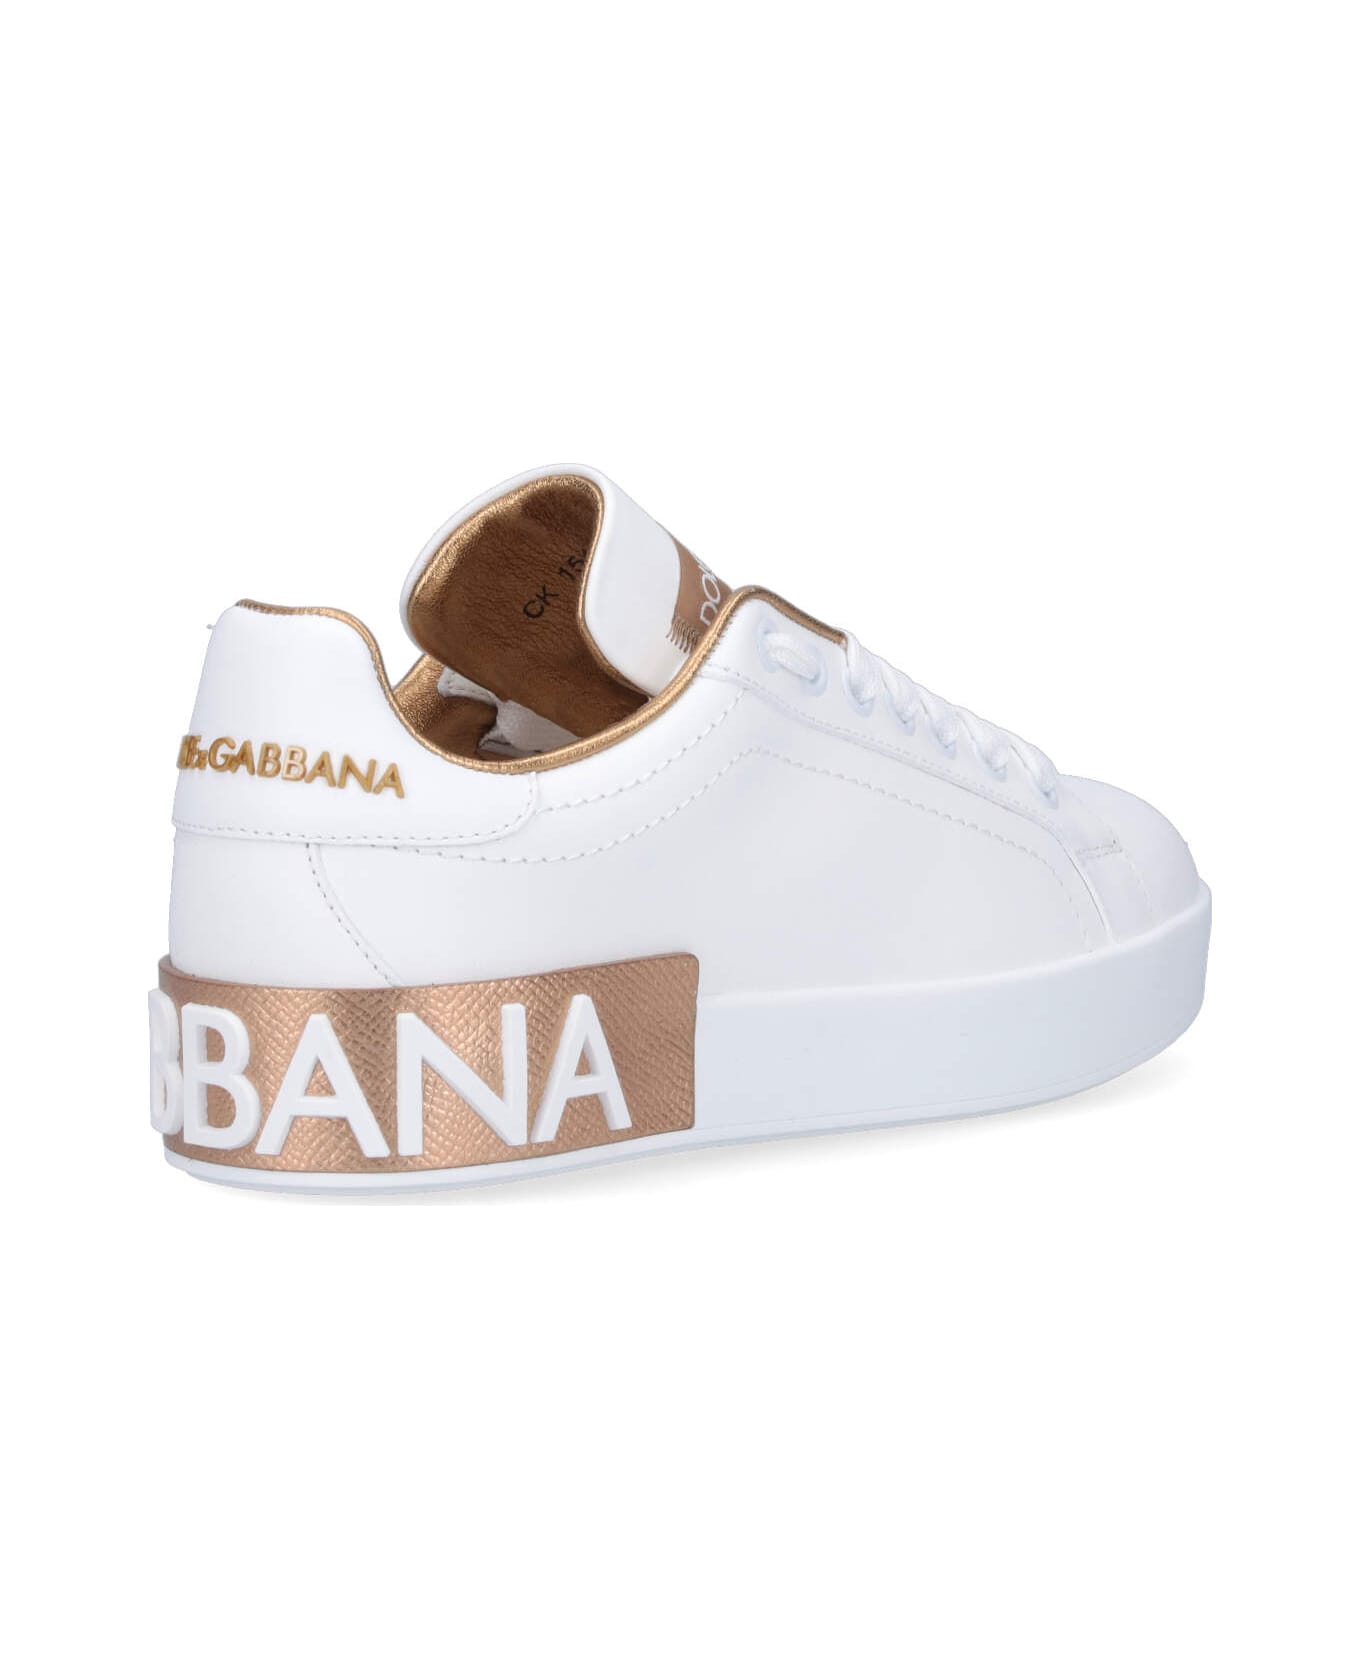 Dolce & Gabbana 'portofino' Sneakers - White スニーカー